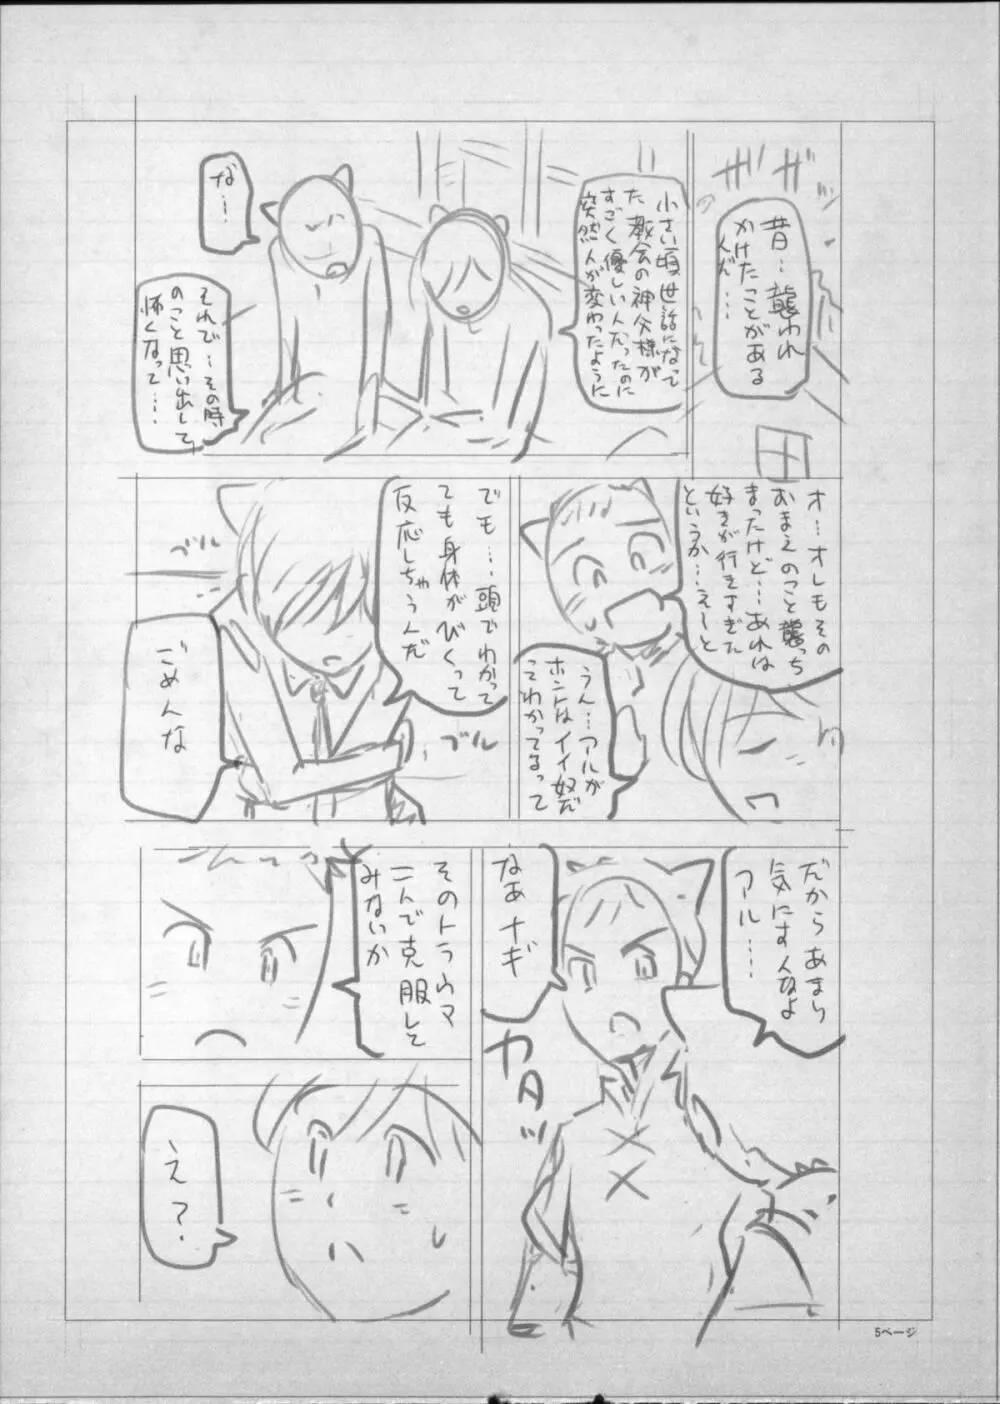 魔女×ショタ + 描き下ろし8P小冊子, 限定版 特典情報 ~ 限定版 252ページ